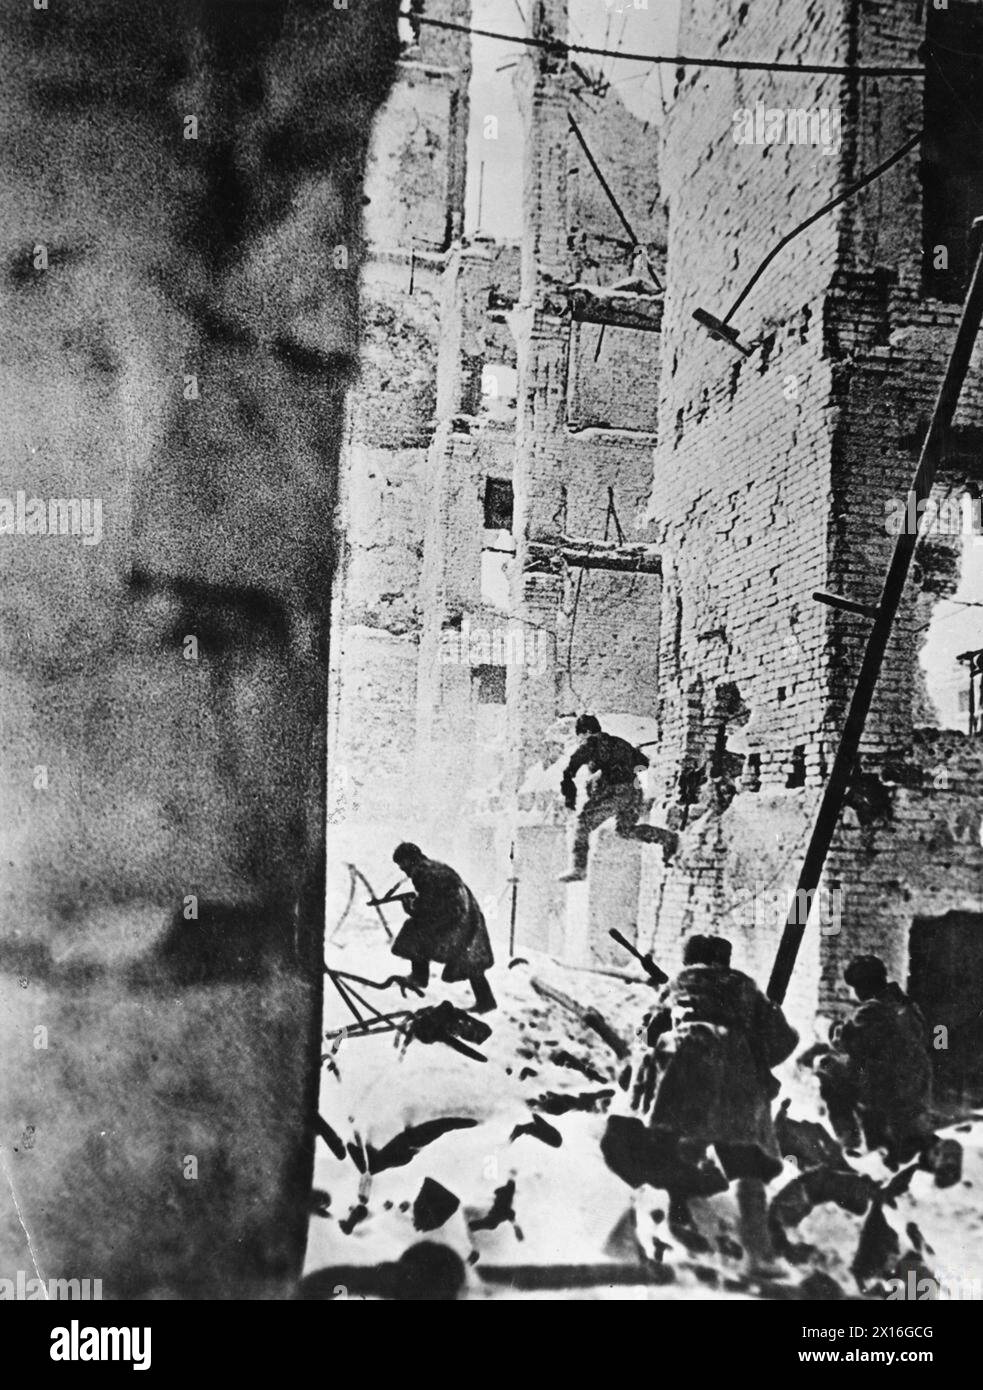 LA BATAILLE DE STALINGRAD, AOÛT 1942-FÉVRIER 1943 - infanterie soviétique en action dans les ruines de l'Armée rouge de Stalingrad Banque D'Images